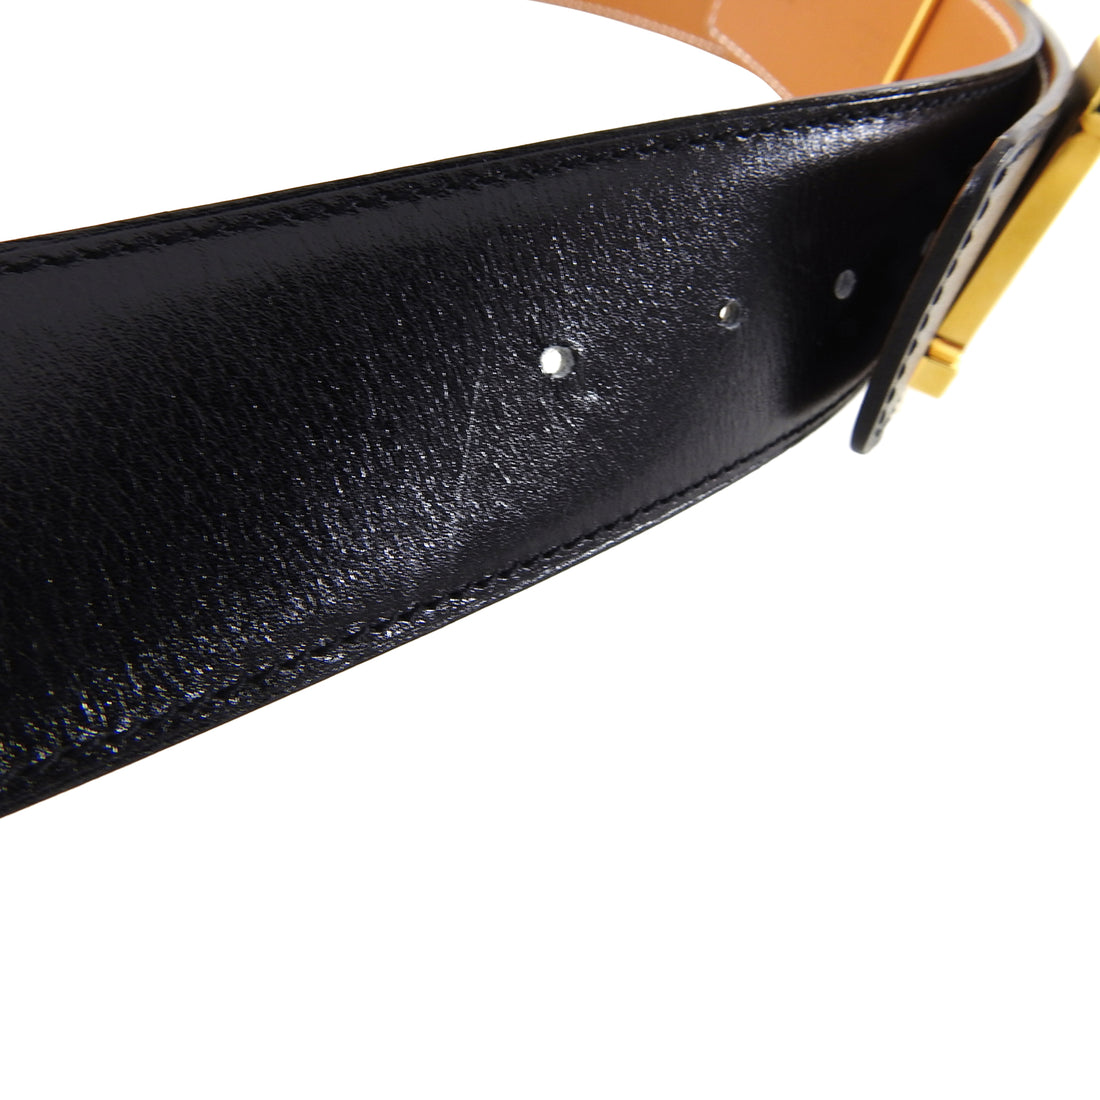 Hermes Black Leather Gold Constance H Belt Kit - 85 / 32